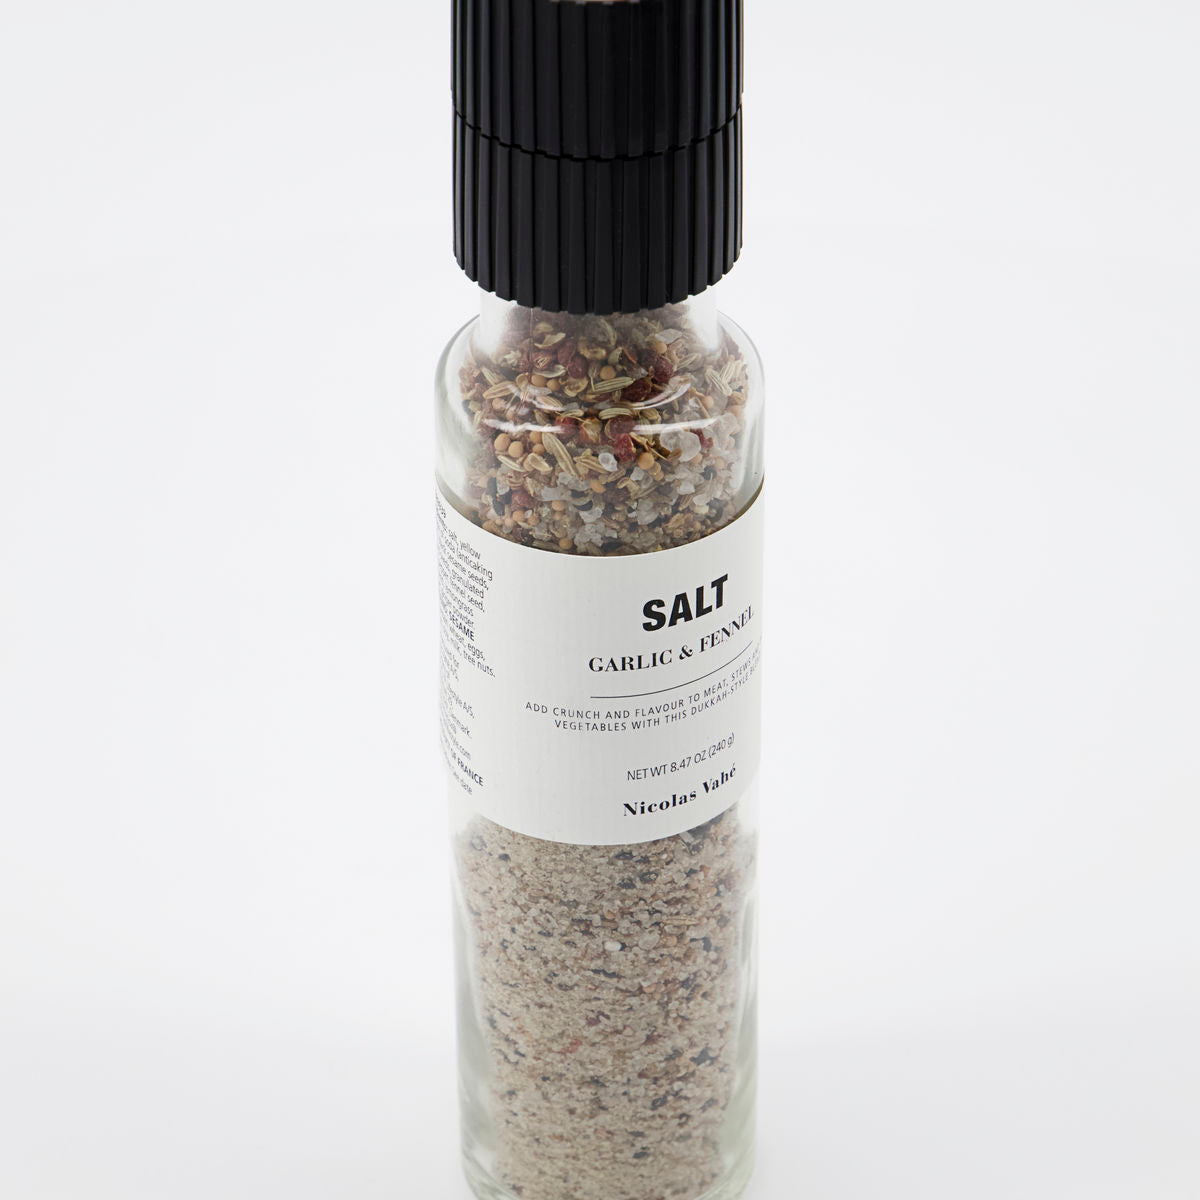 Salt with Garlic and Fennel